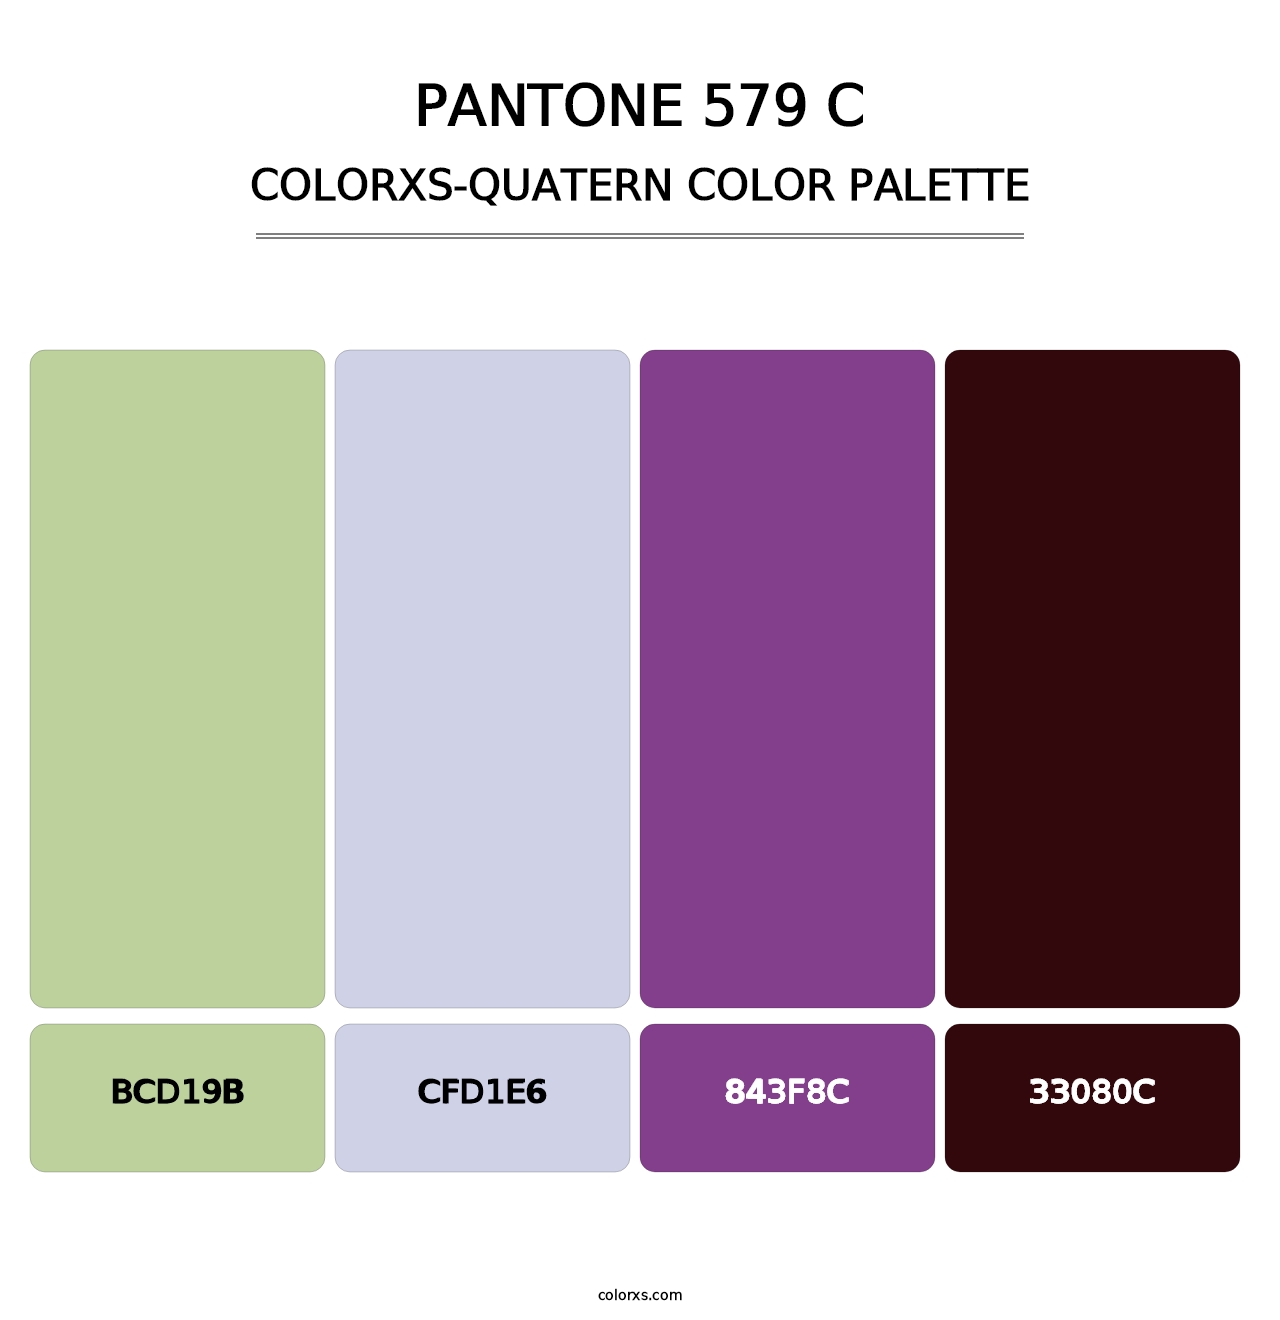 PANTONE 579 C - Colorxs Quatern Palette